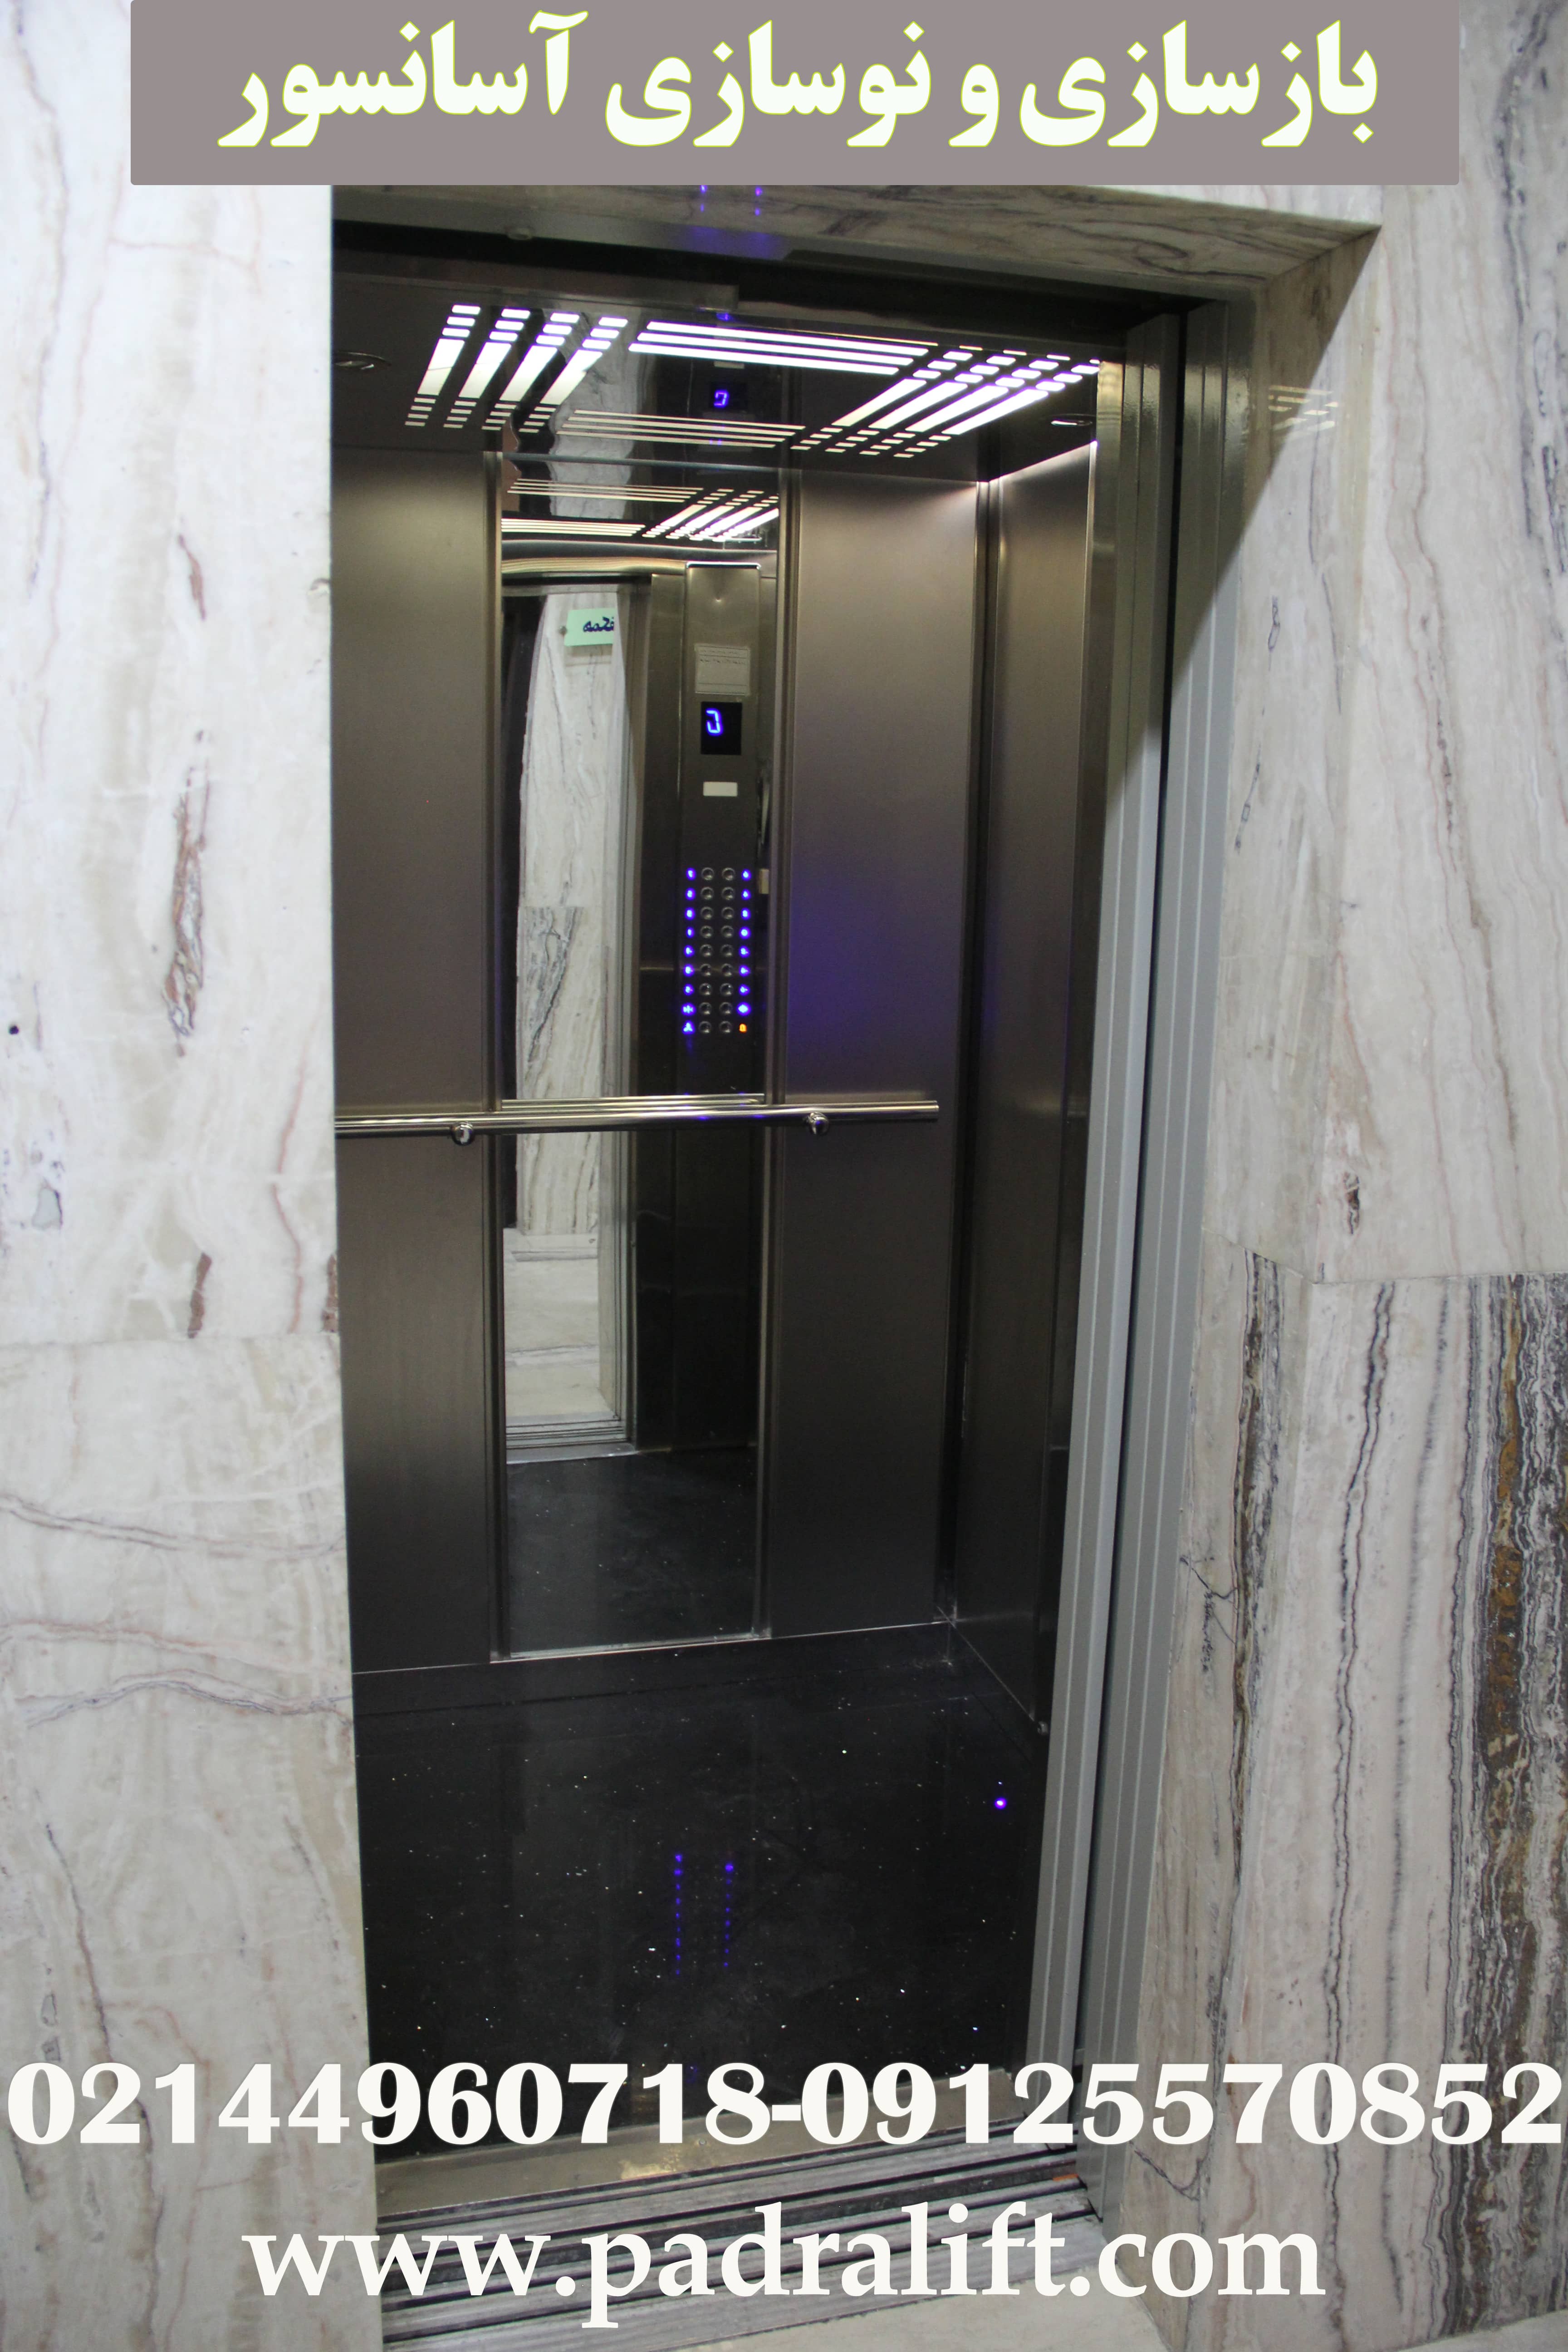 بازسازی و نوسازی آسانسور